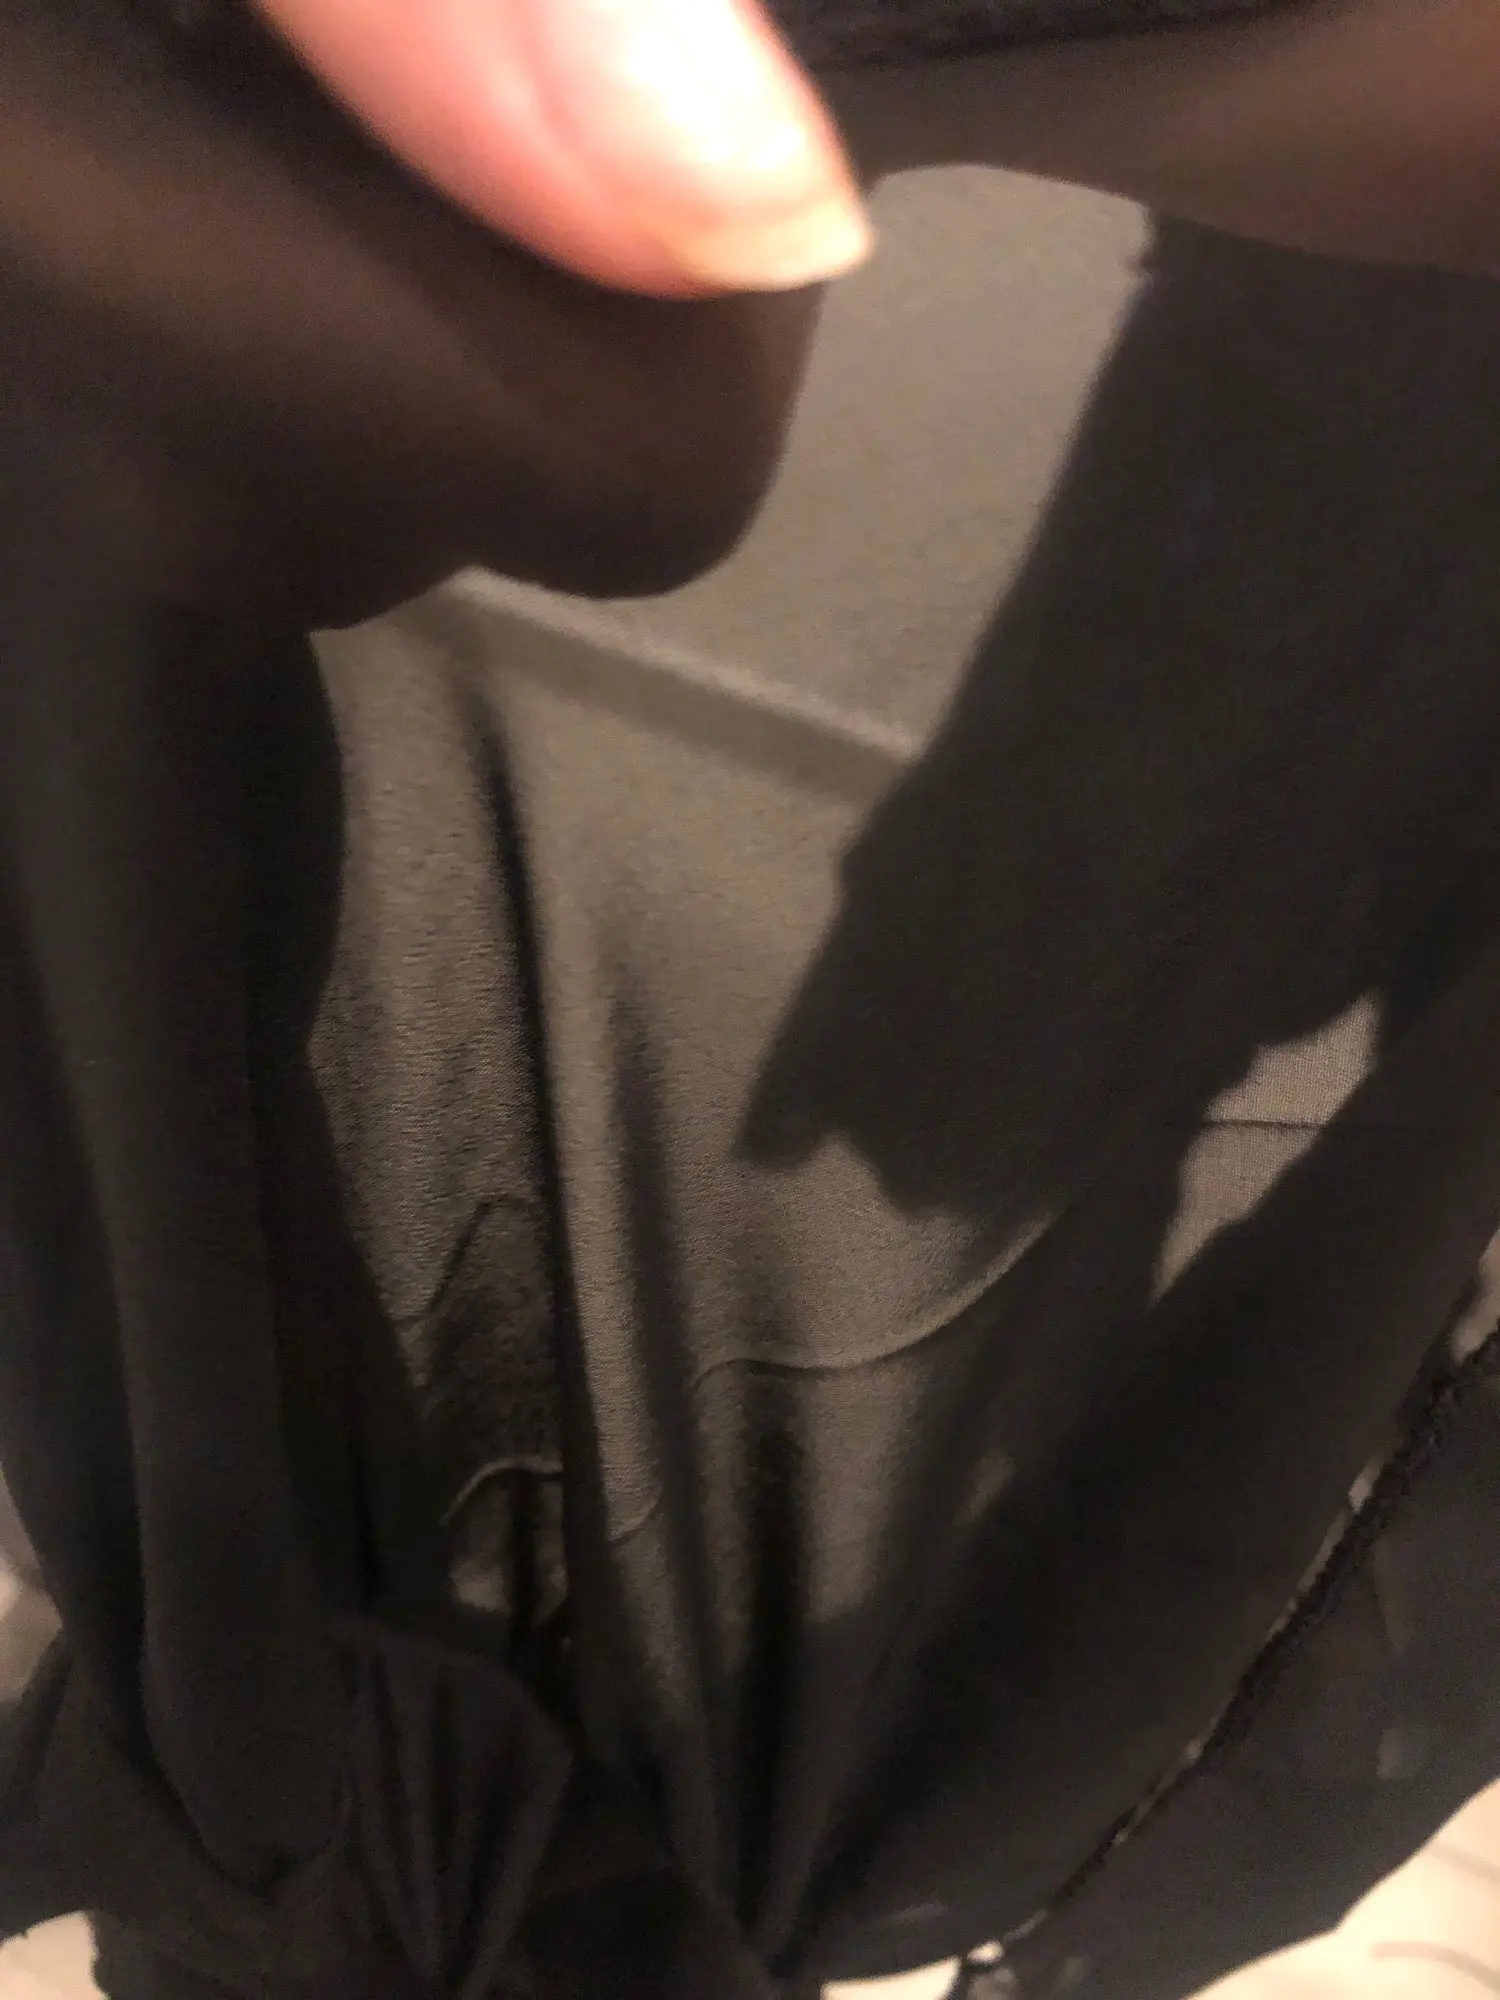 New Ruffles Women Tops Fashion Summer Chiffon Blouse Plus Size 3XL Batwing Short Sleeve Casual Shirt Fashion Elegant Blouse|chiffon blouse|blouse fashionblouses plus - AliExpress